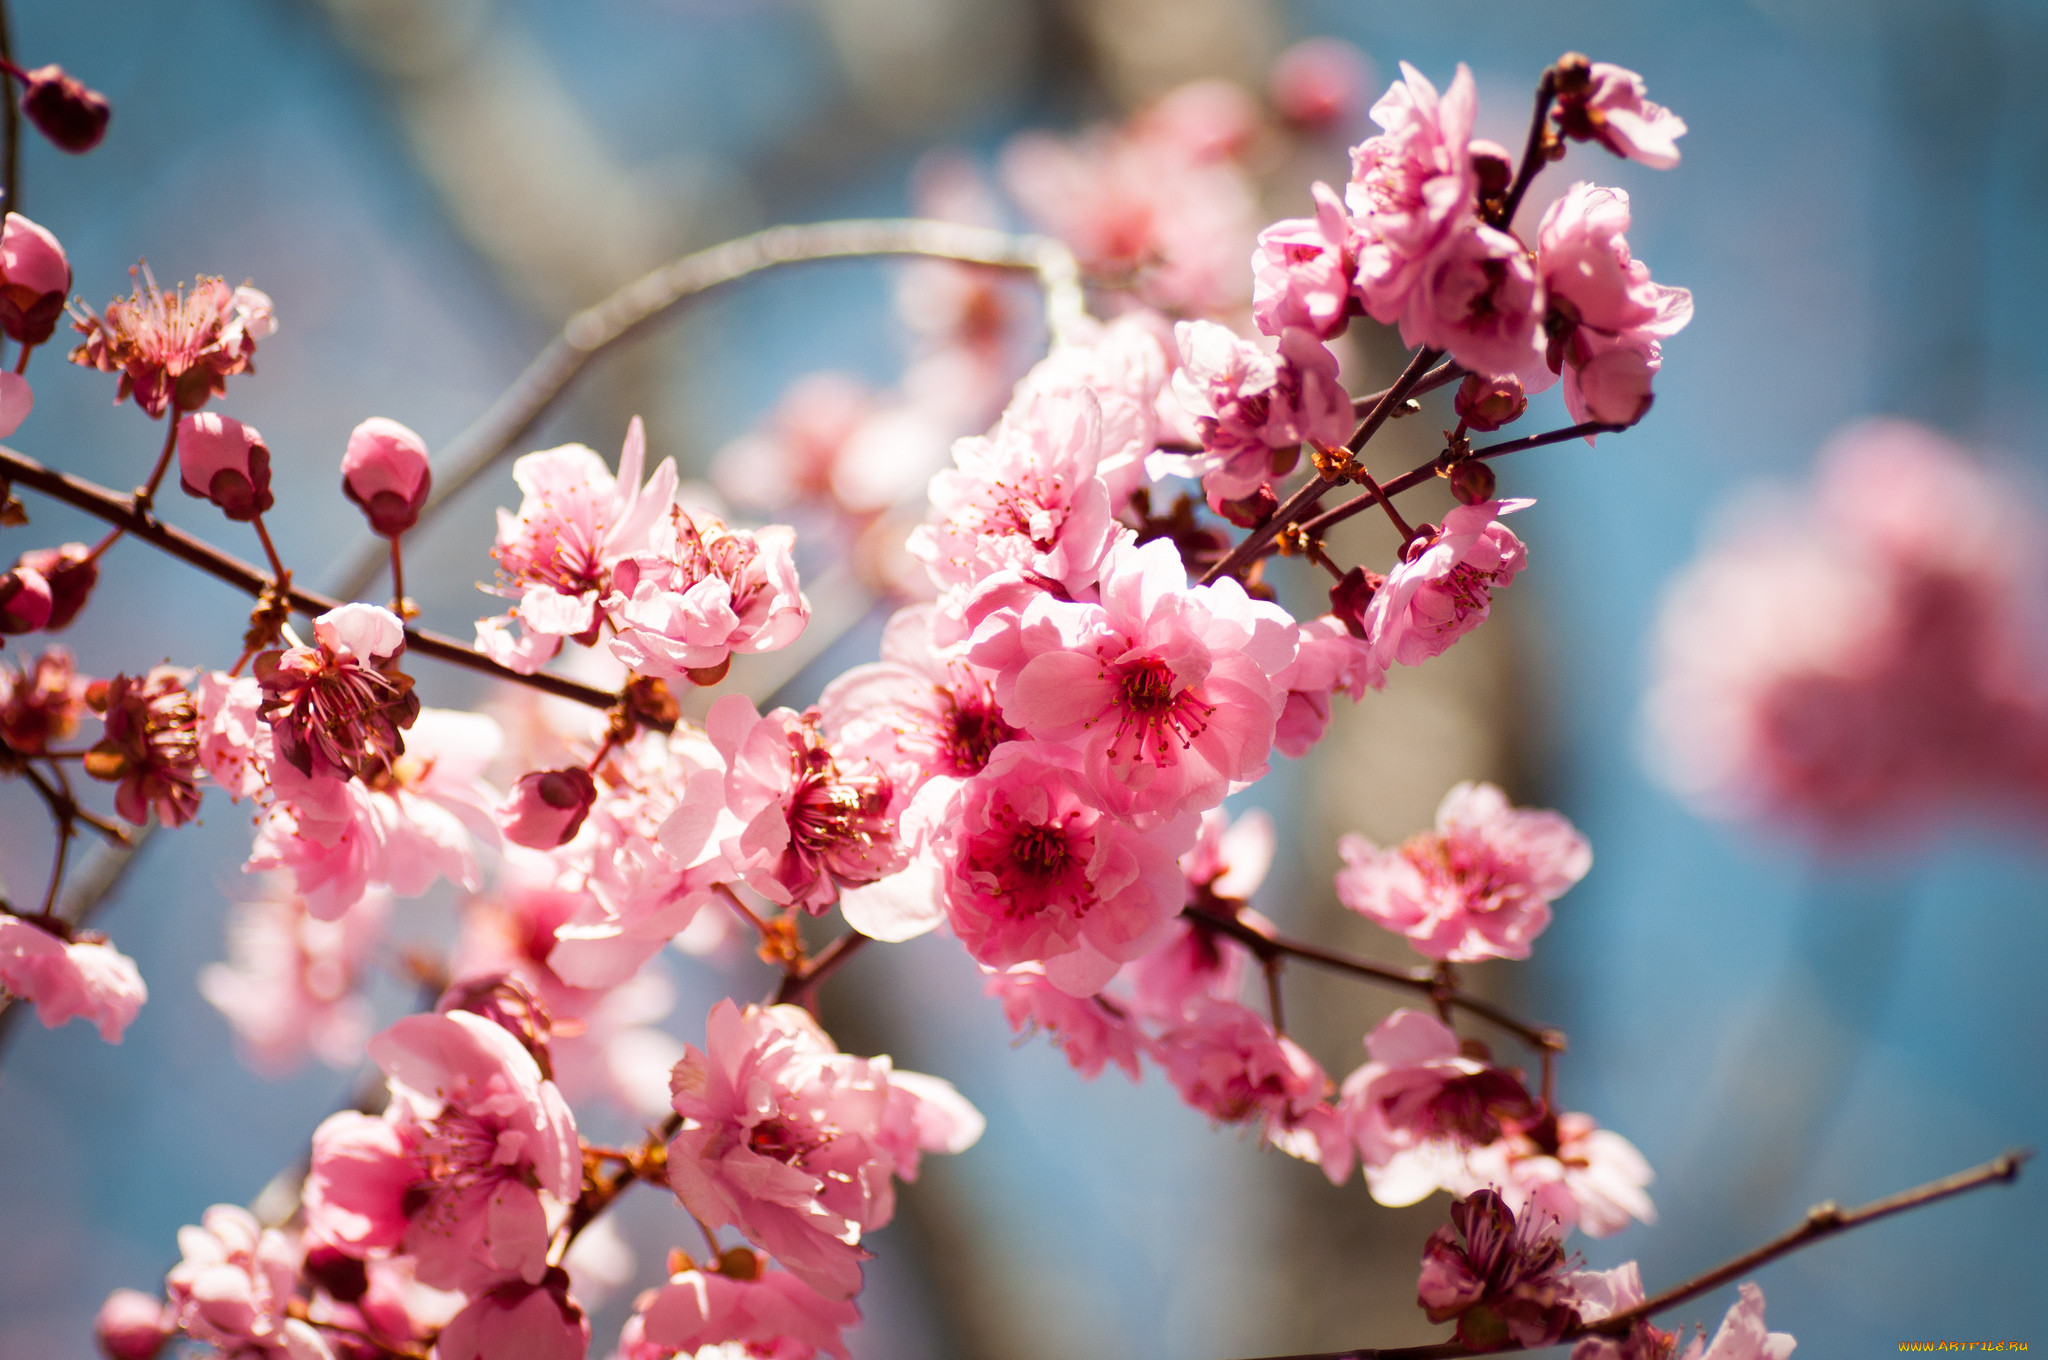 Заставка на телефон для женщин природа. Цветущие деревья. Весеннее дерево. Весенние цветущие деревья. Весенняя тема.